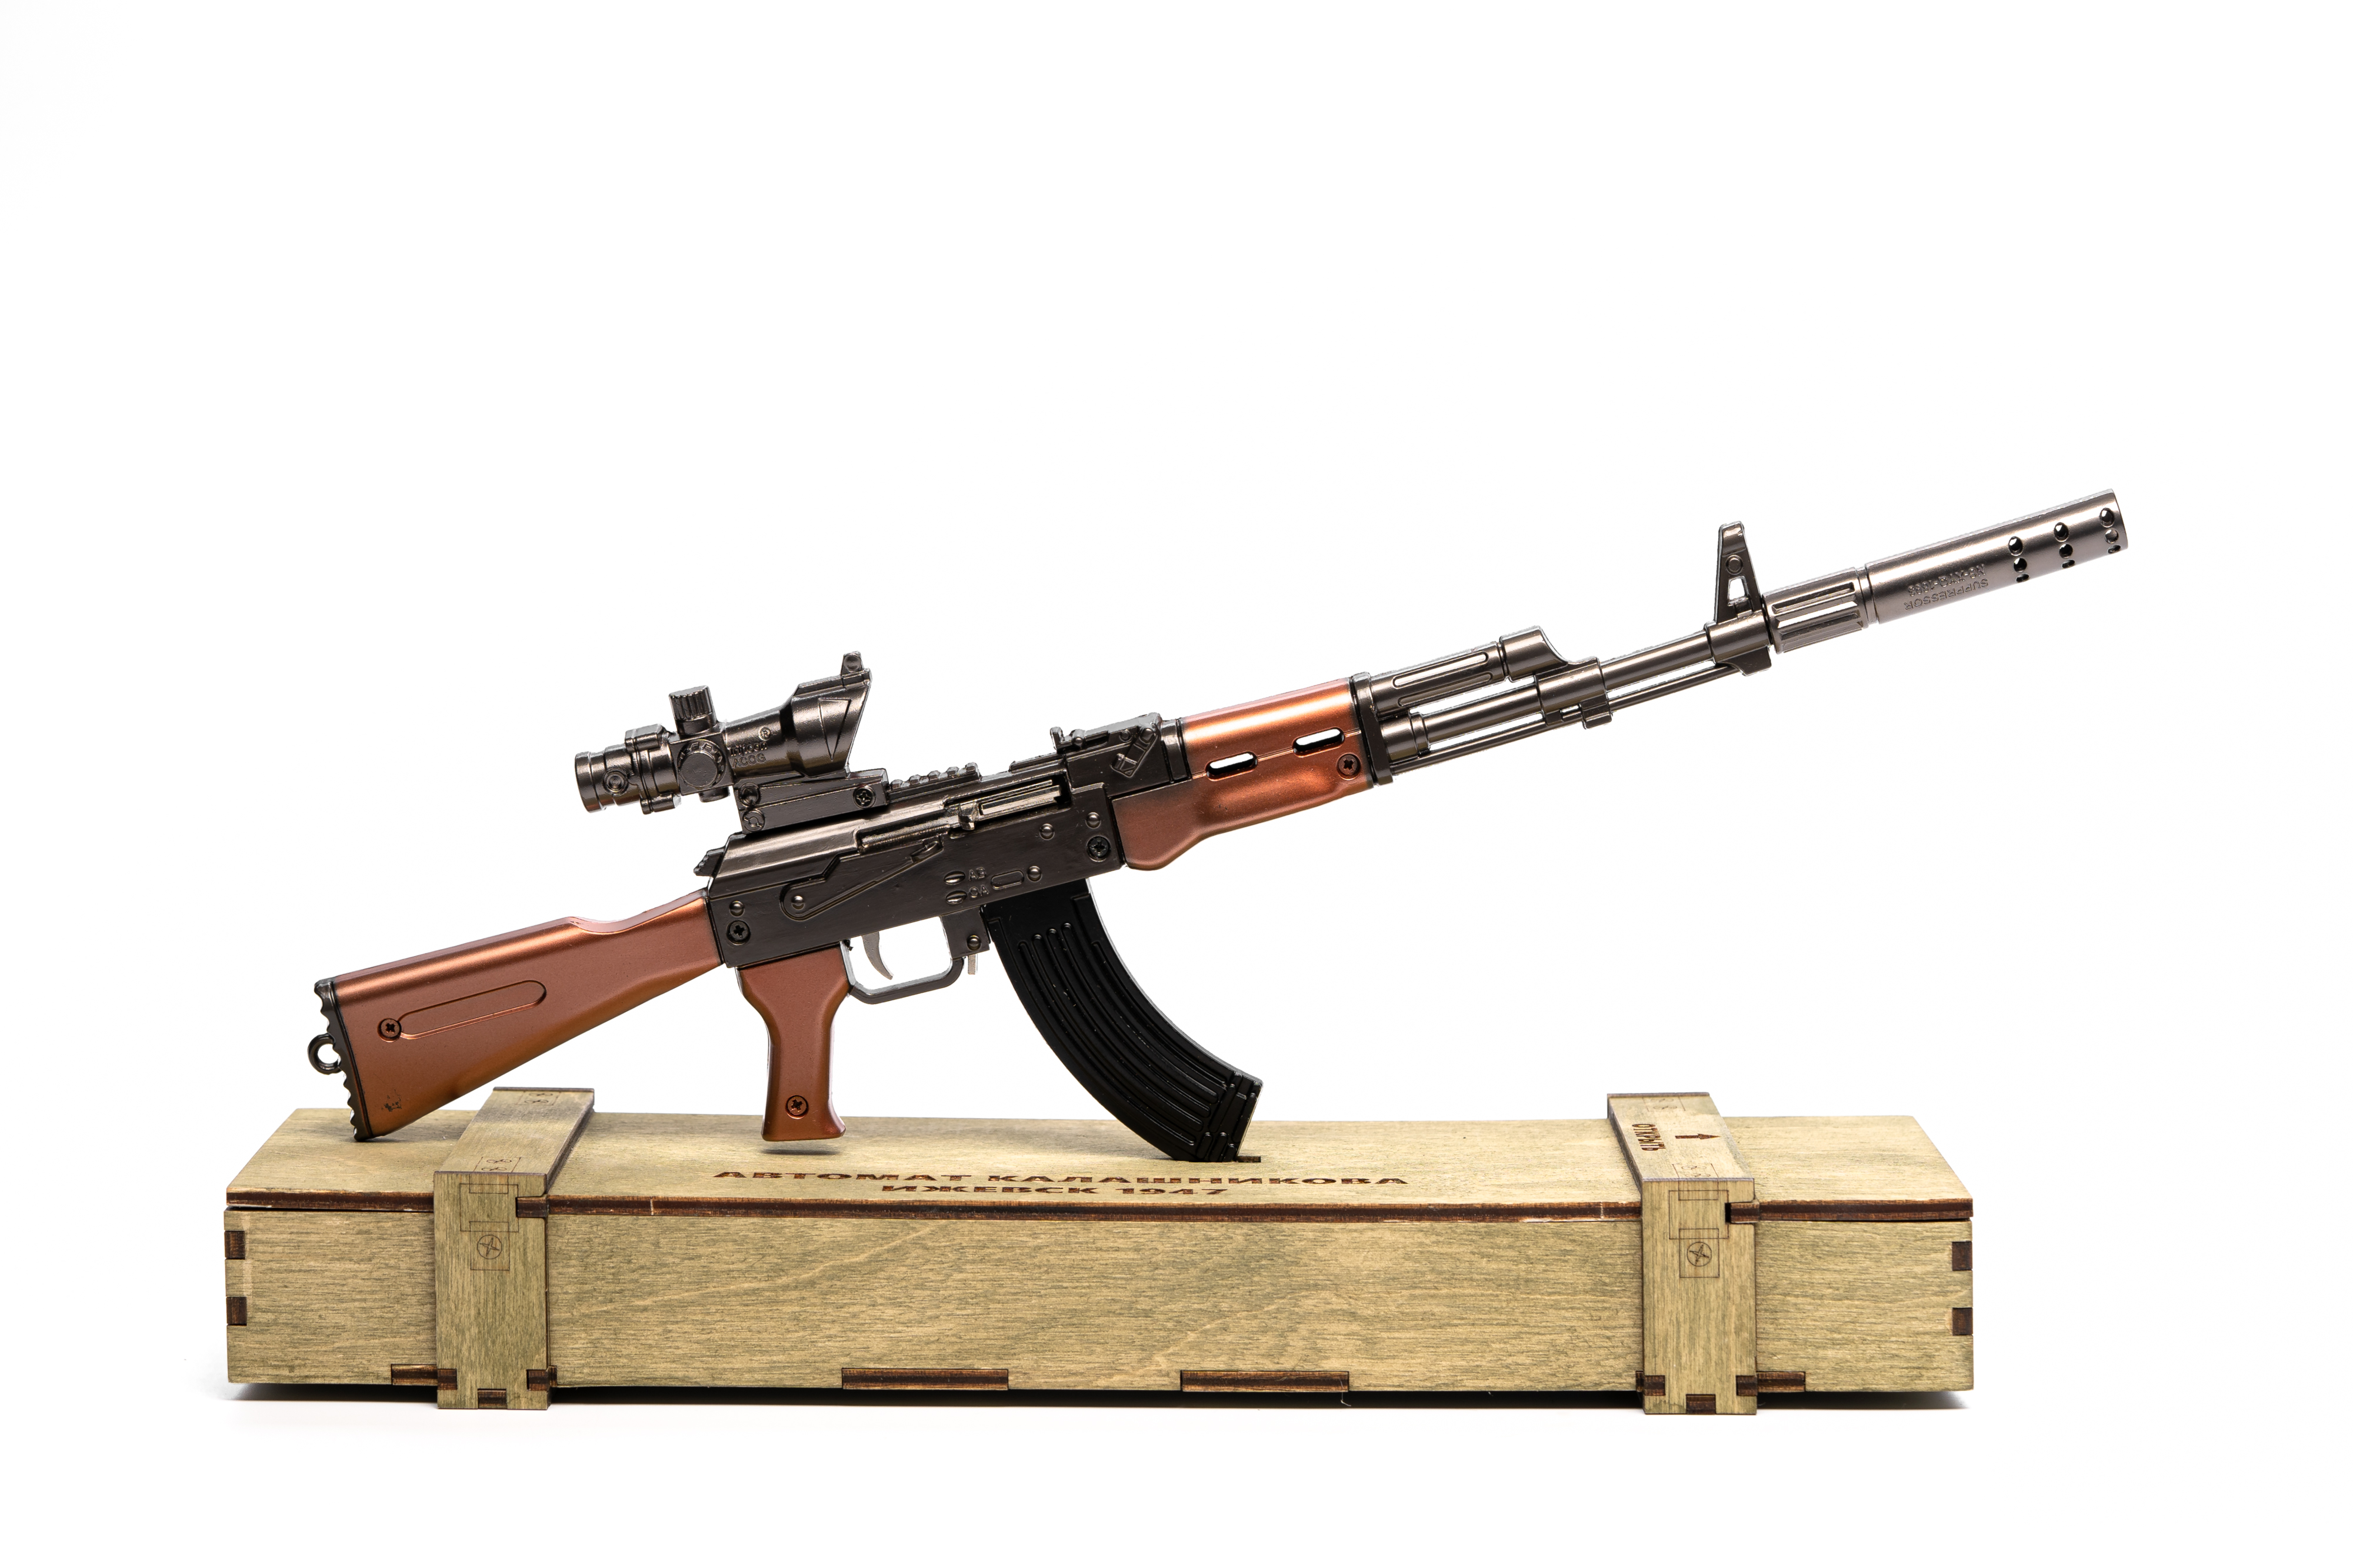 Брелок Автомата Калашников АК-47 в ящике, 36 см (Хаки)<br>Souvenir model of the Kalashnikov AK-47 in a wooden box, 36 cm